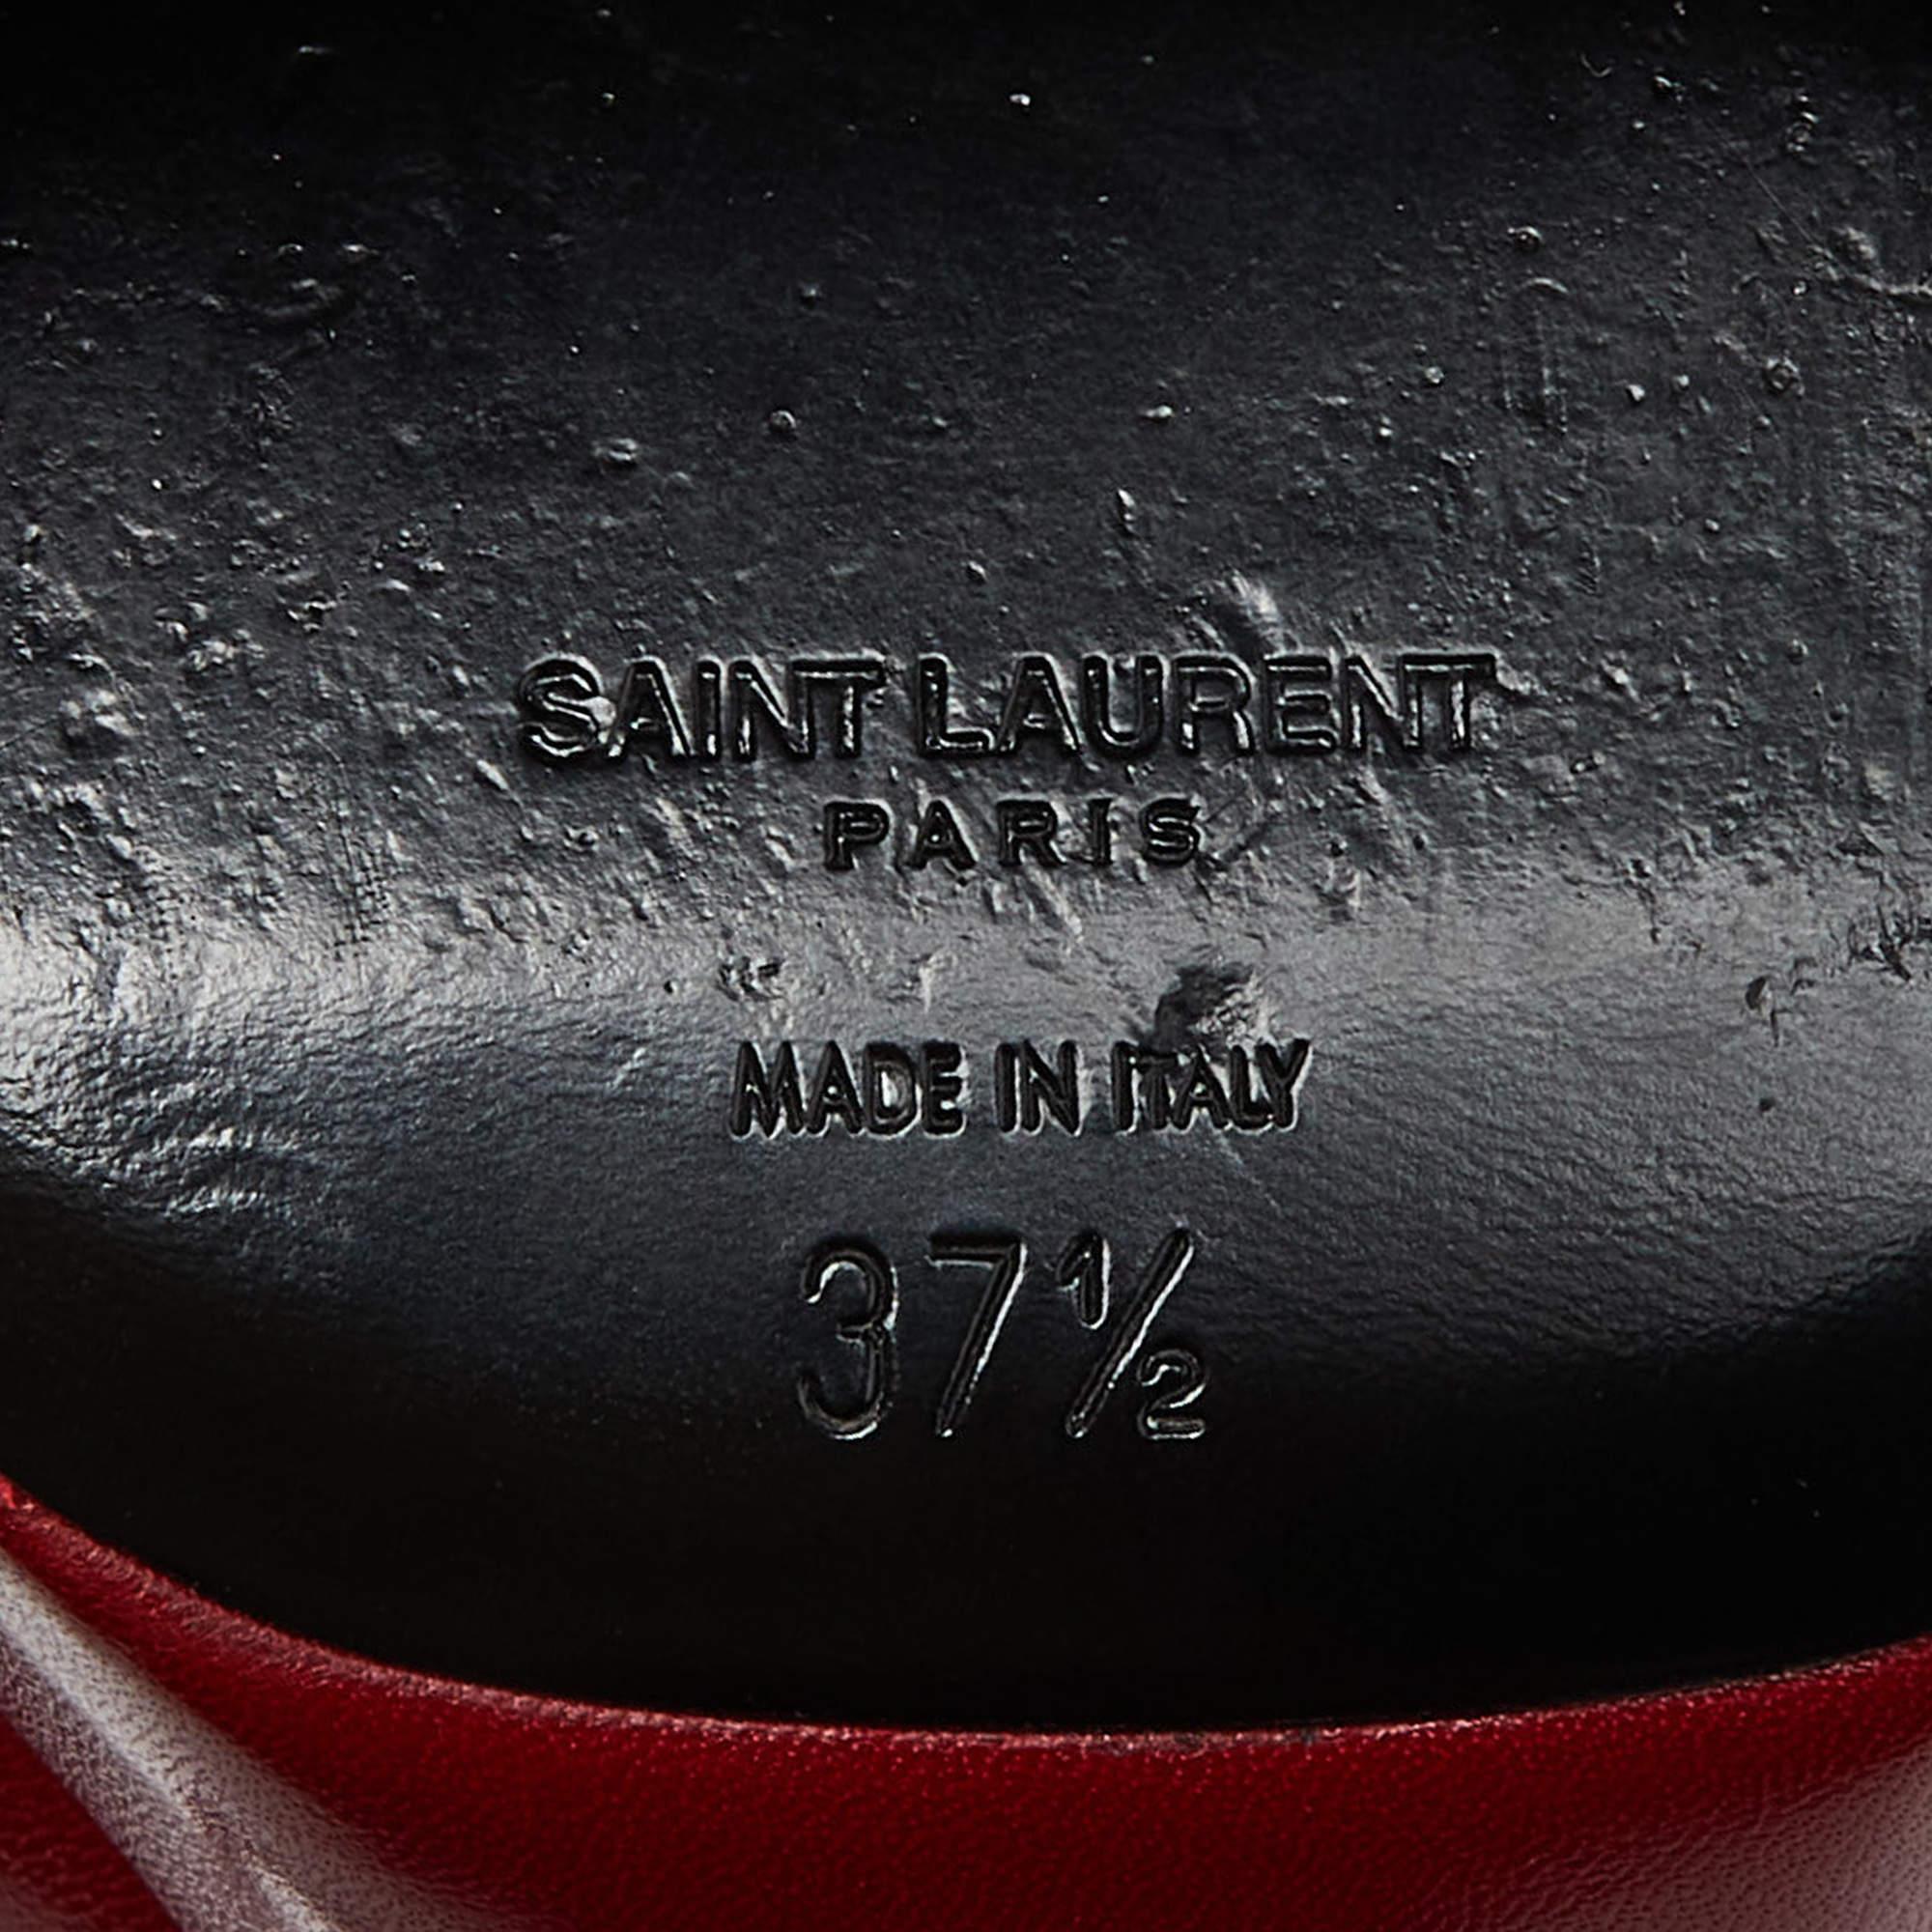 Saint Laurent Red Leather Bianca Sandals Size 37.5 4